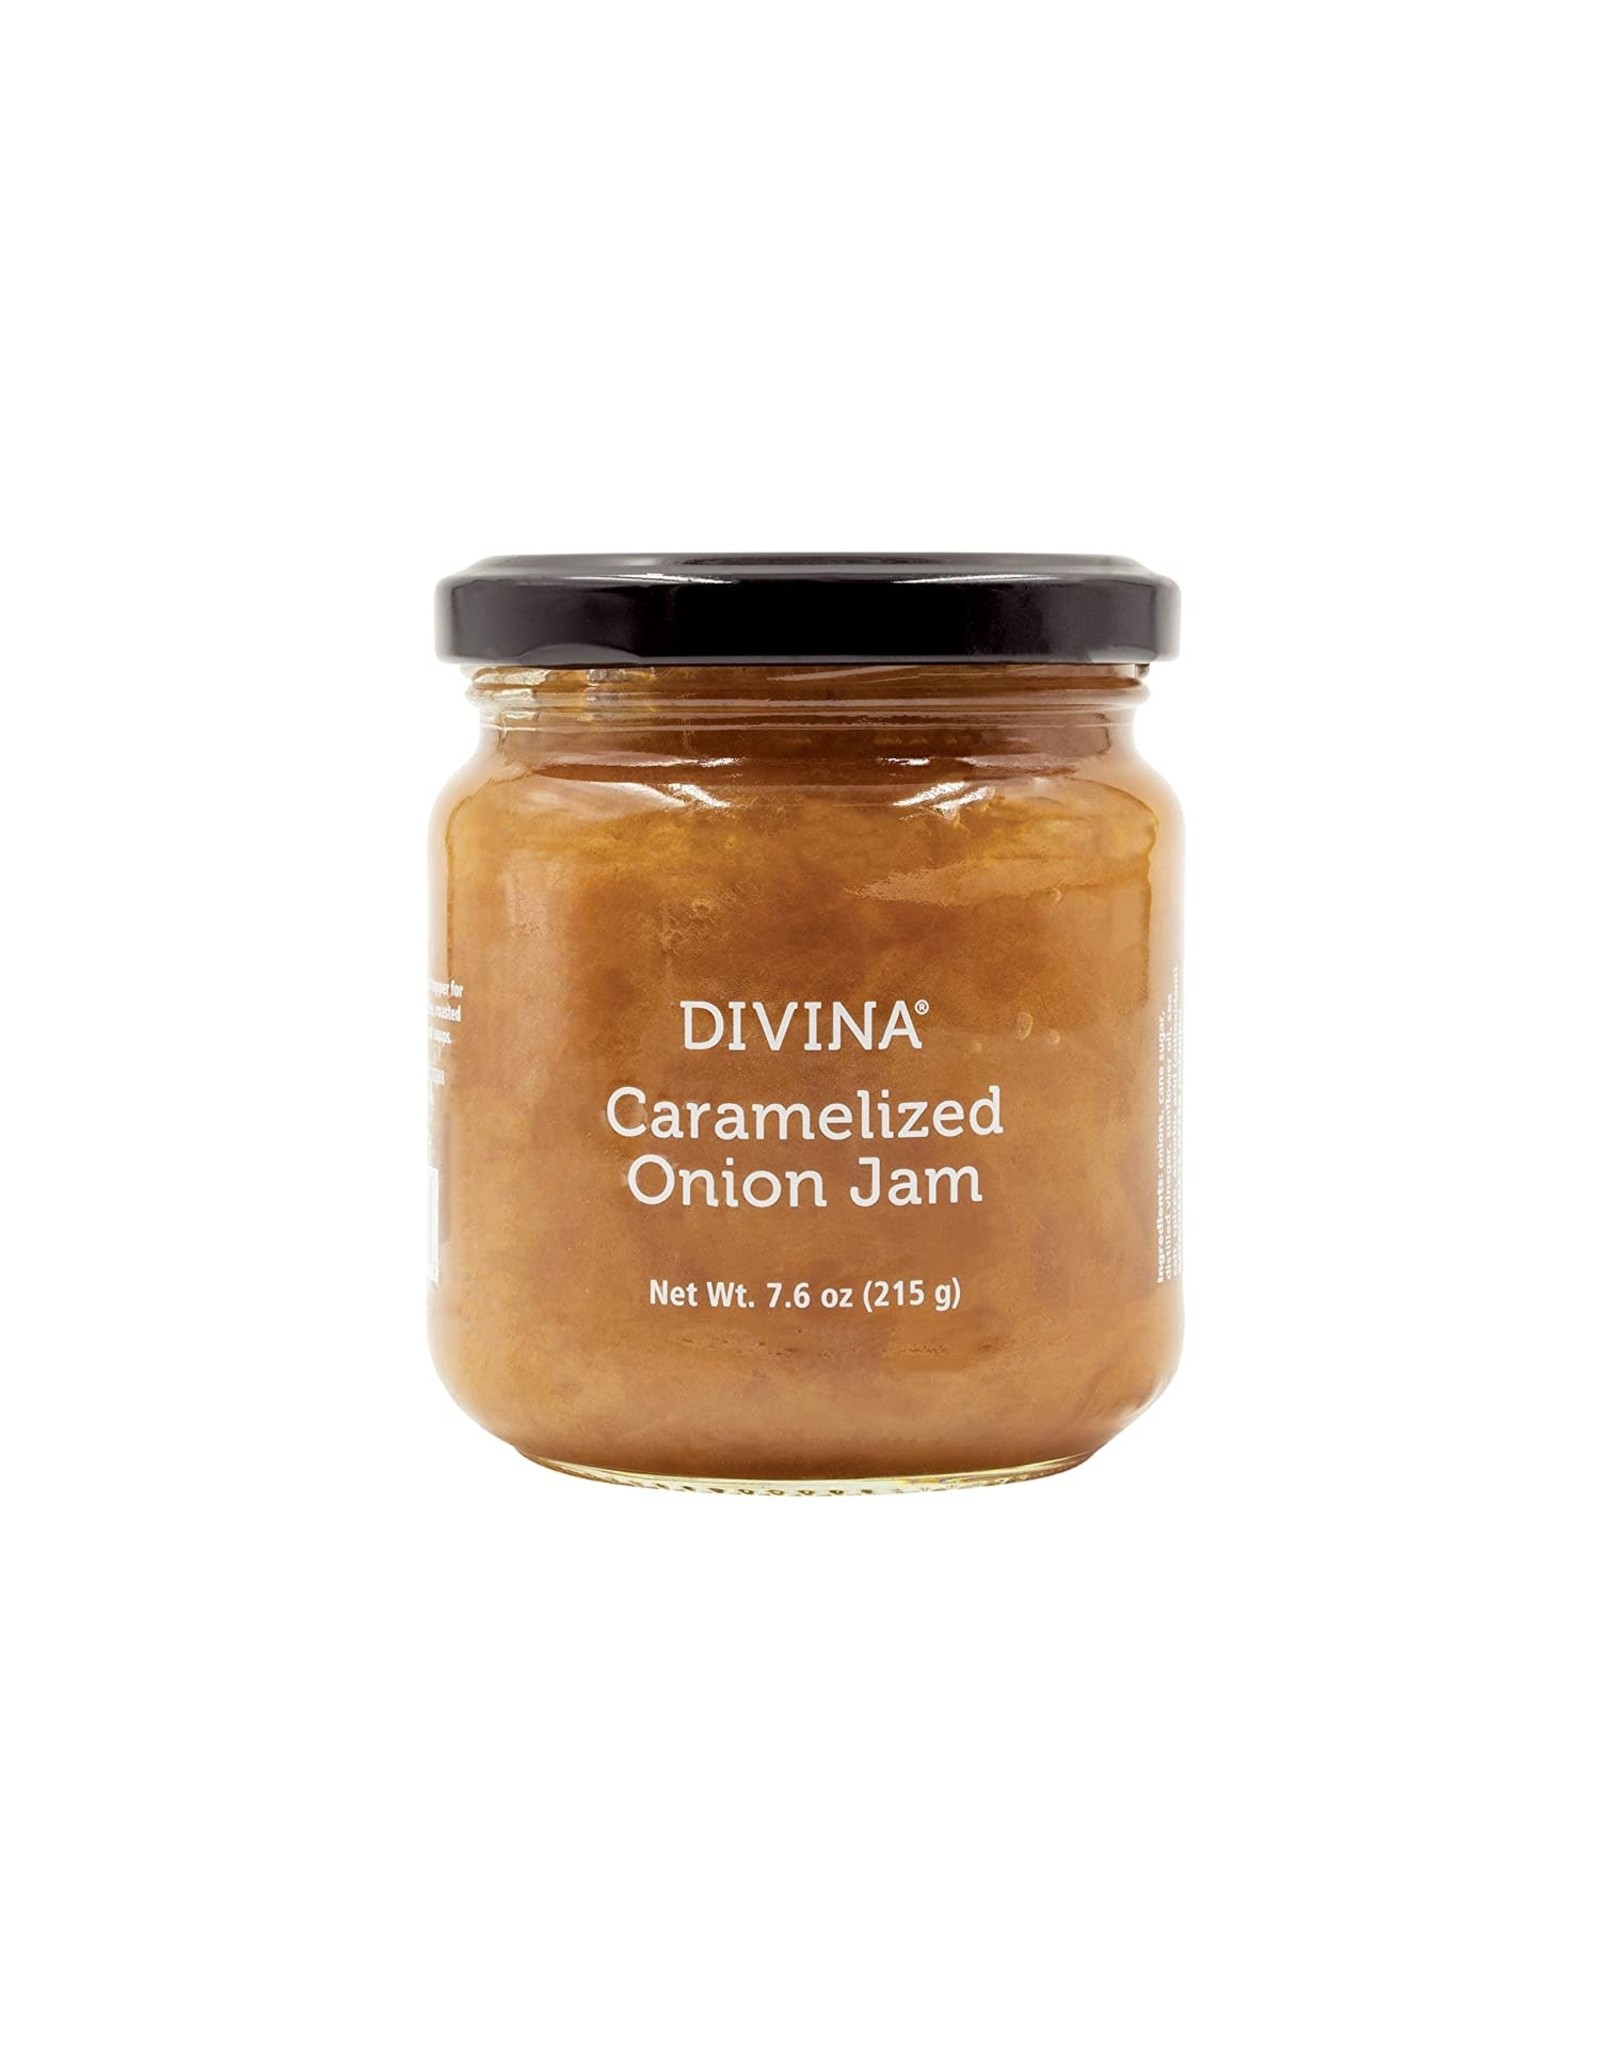 Divinia Caramelized Onion Jam